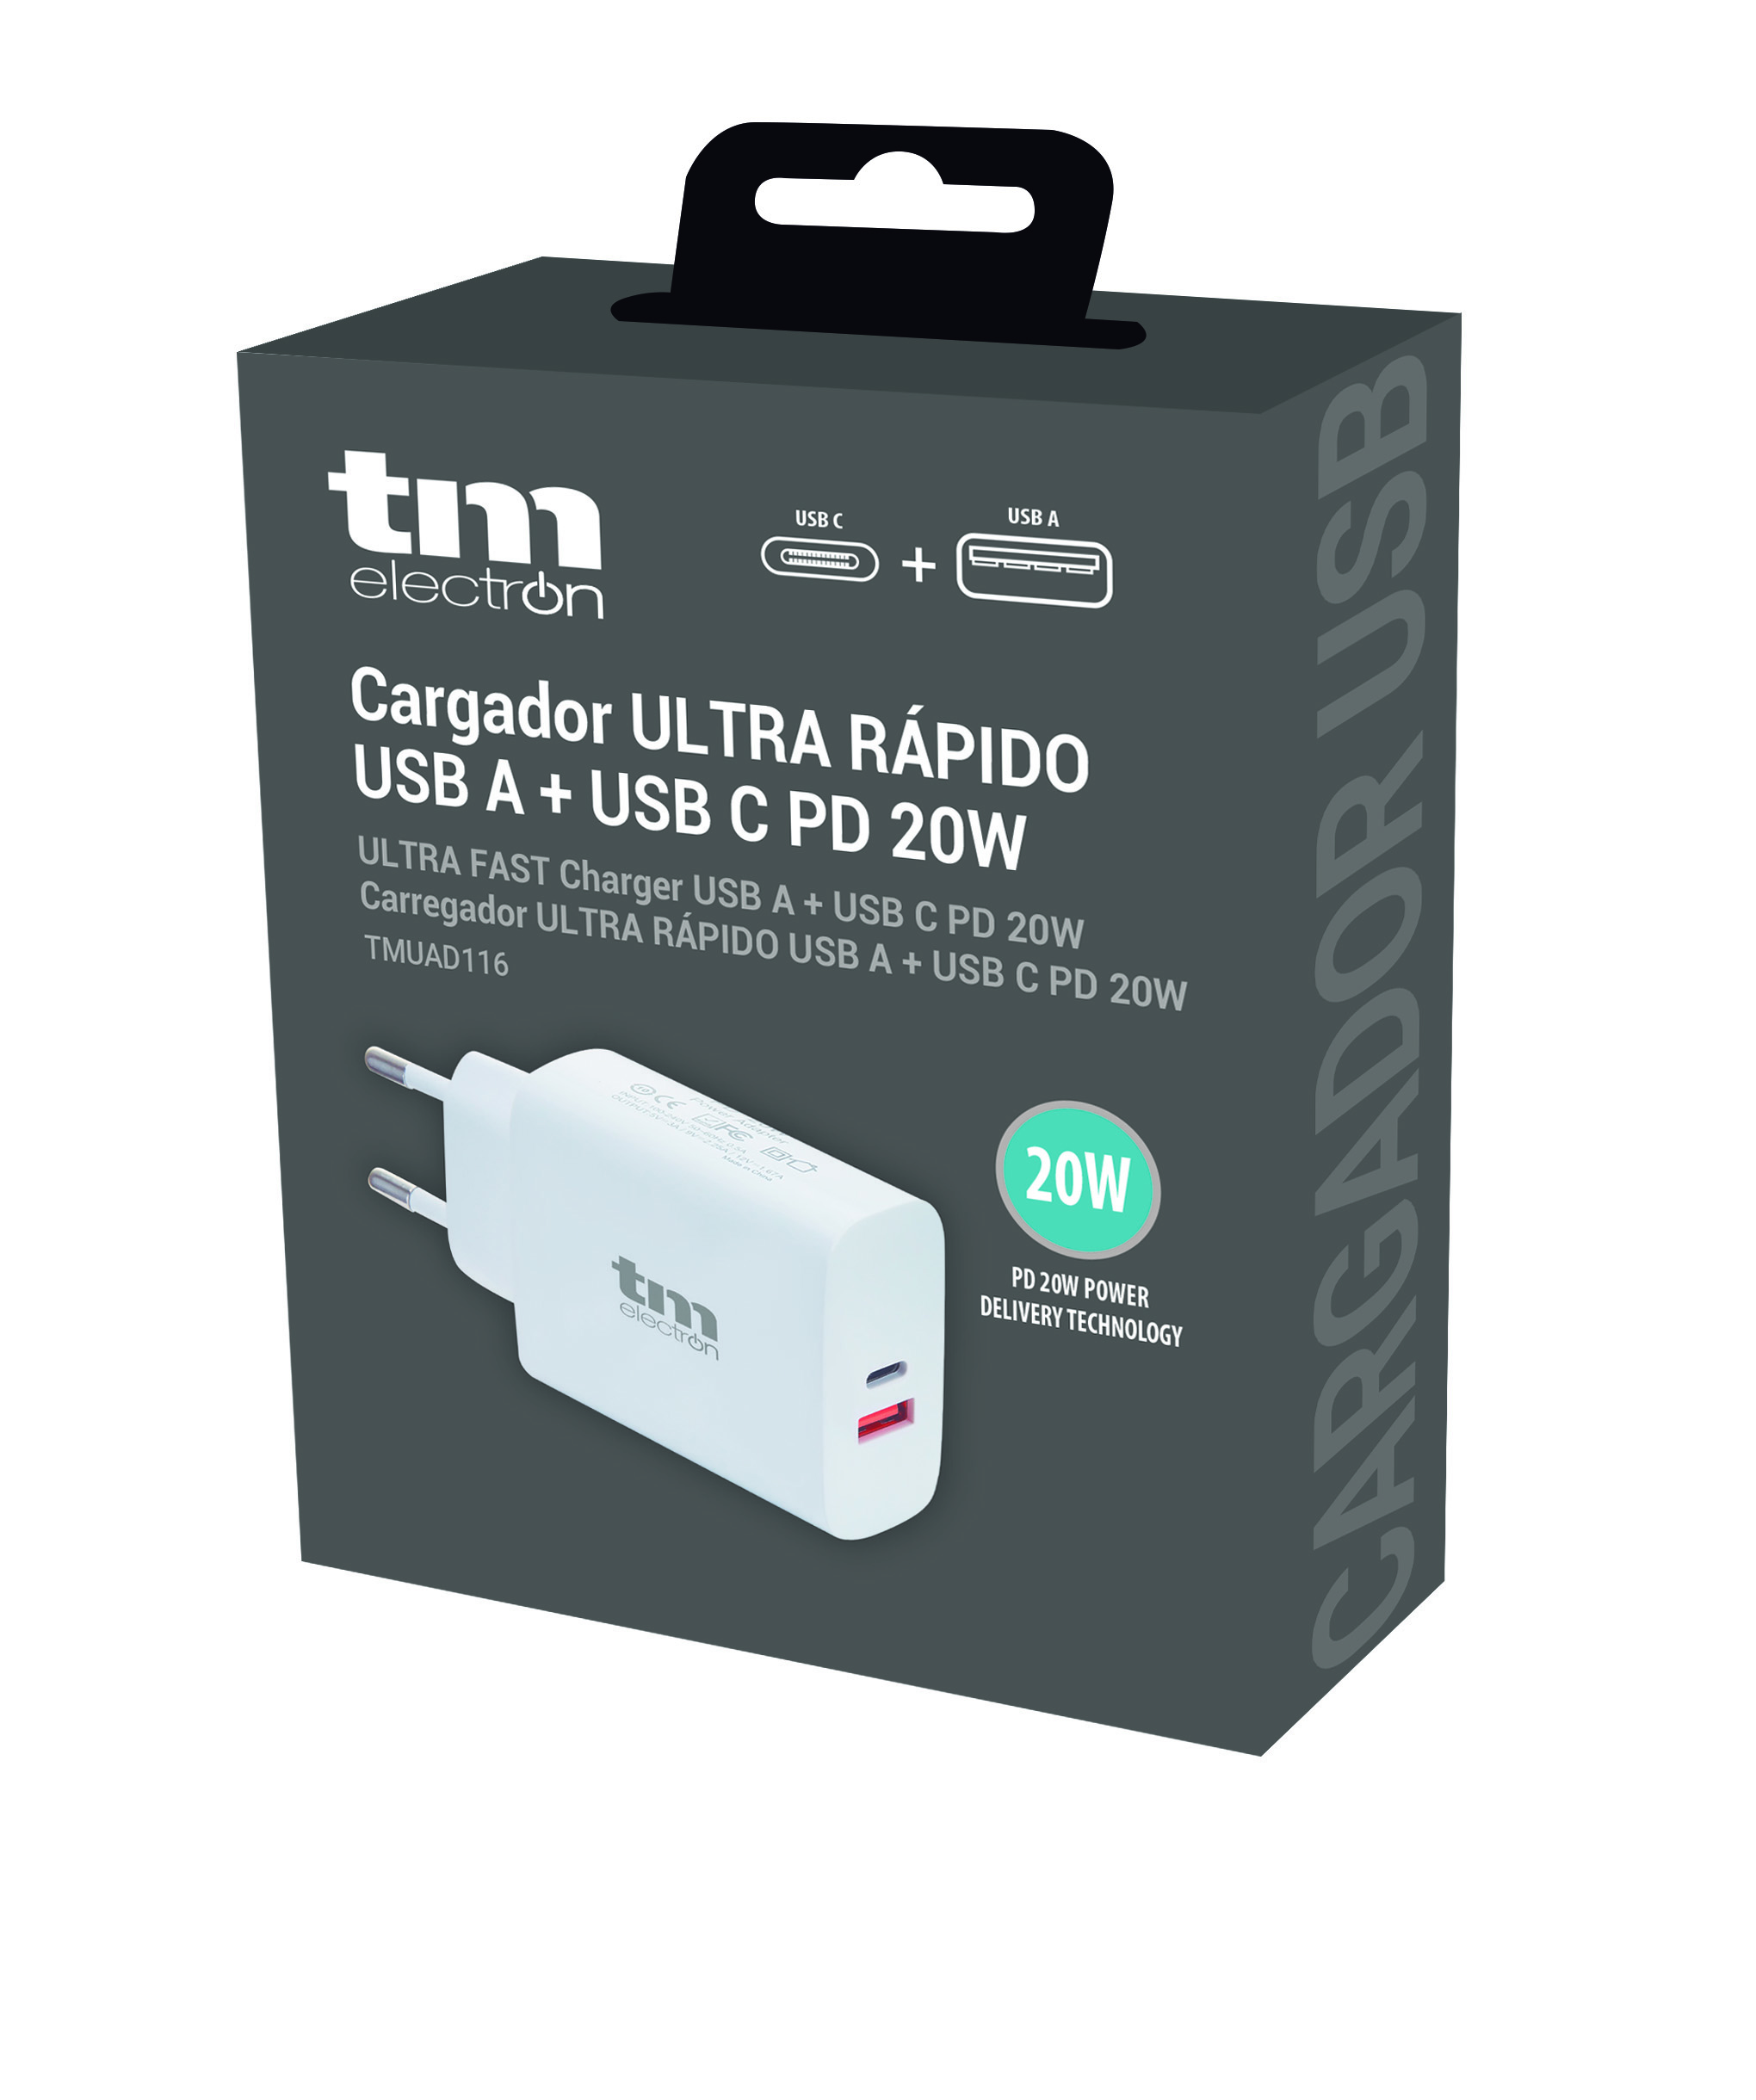 ULTRA Cargador Ultra Rapido Compatible con Iphone USB ULTRA